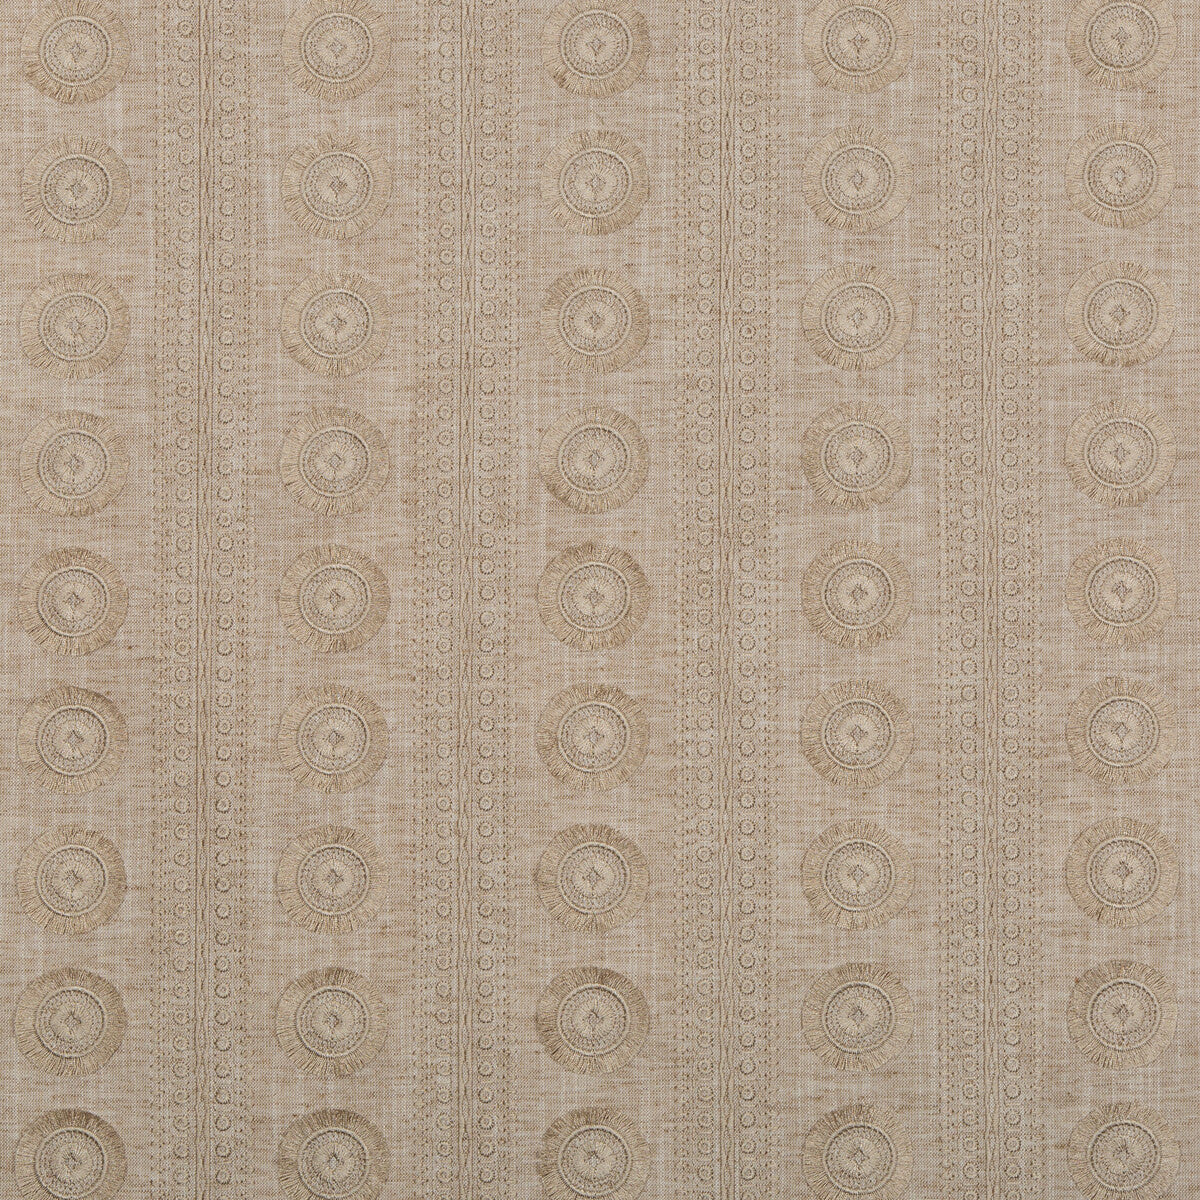 Kravet Basics fabric in 4688-16 color - pattern 4688.16.0 - by Kravet Basics